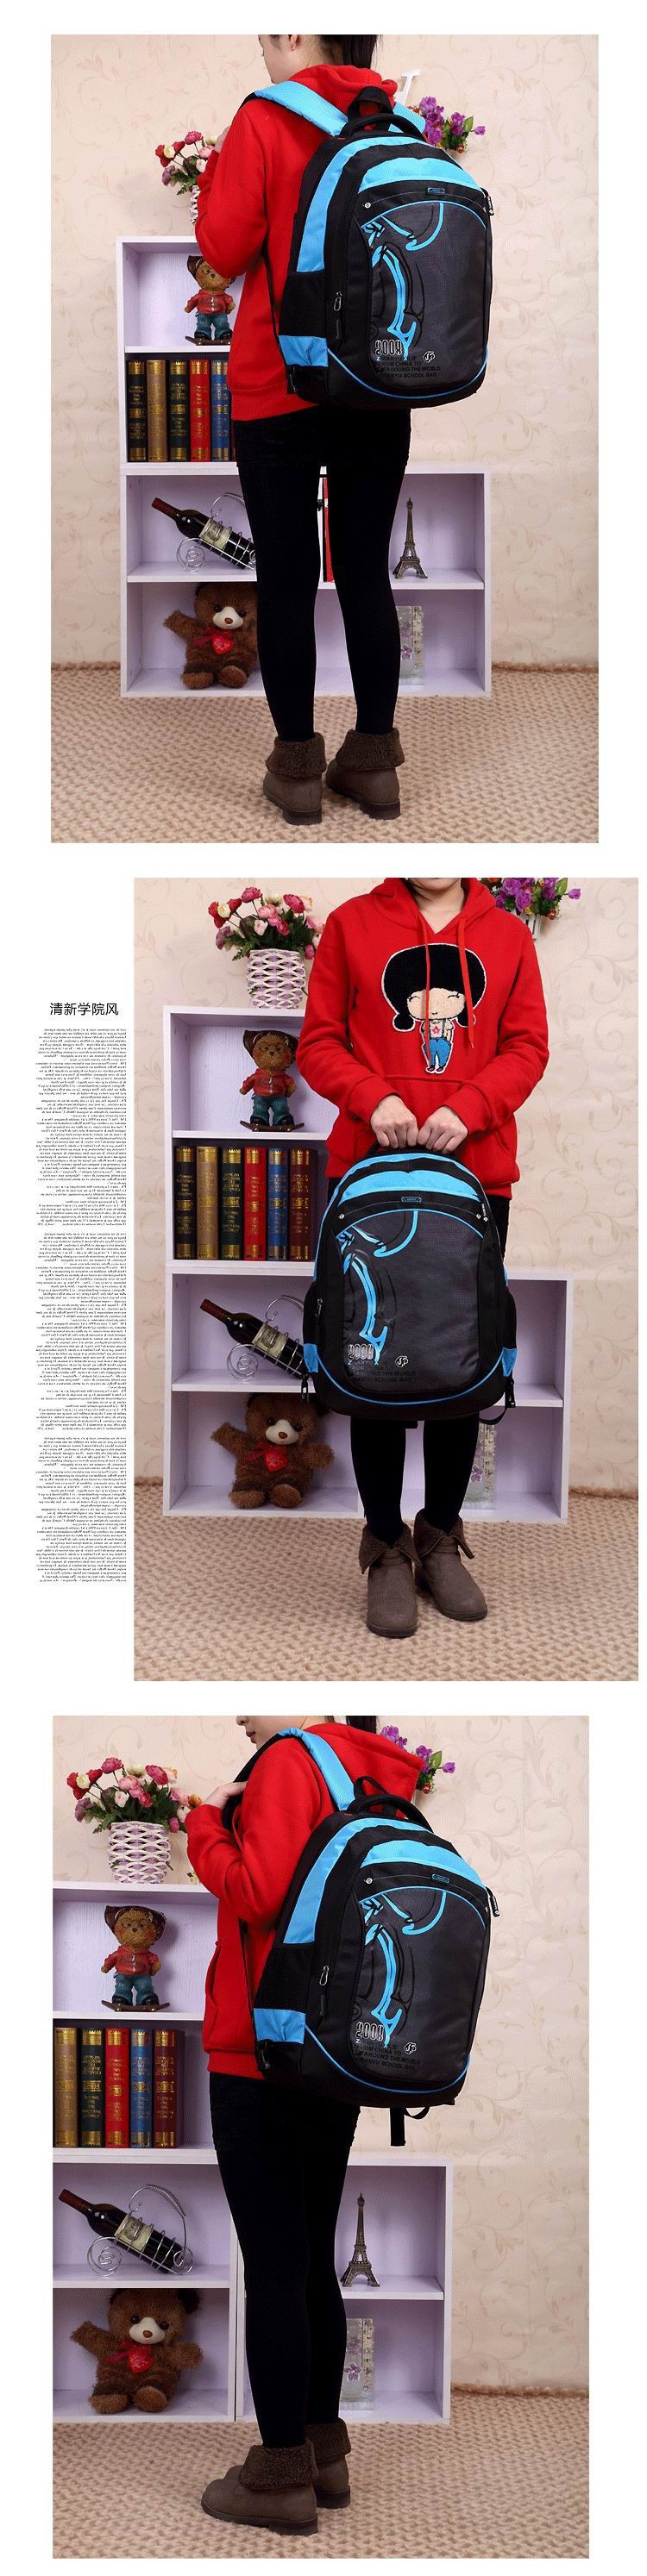 school-trolley-backpack-bag-wheels-backpack-luggage-travel-8